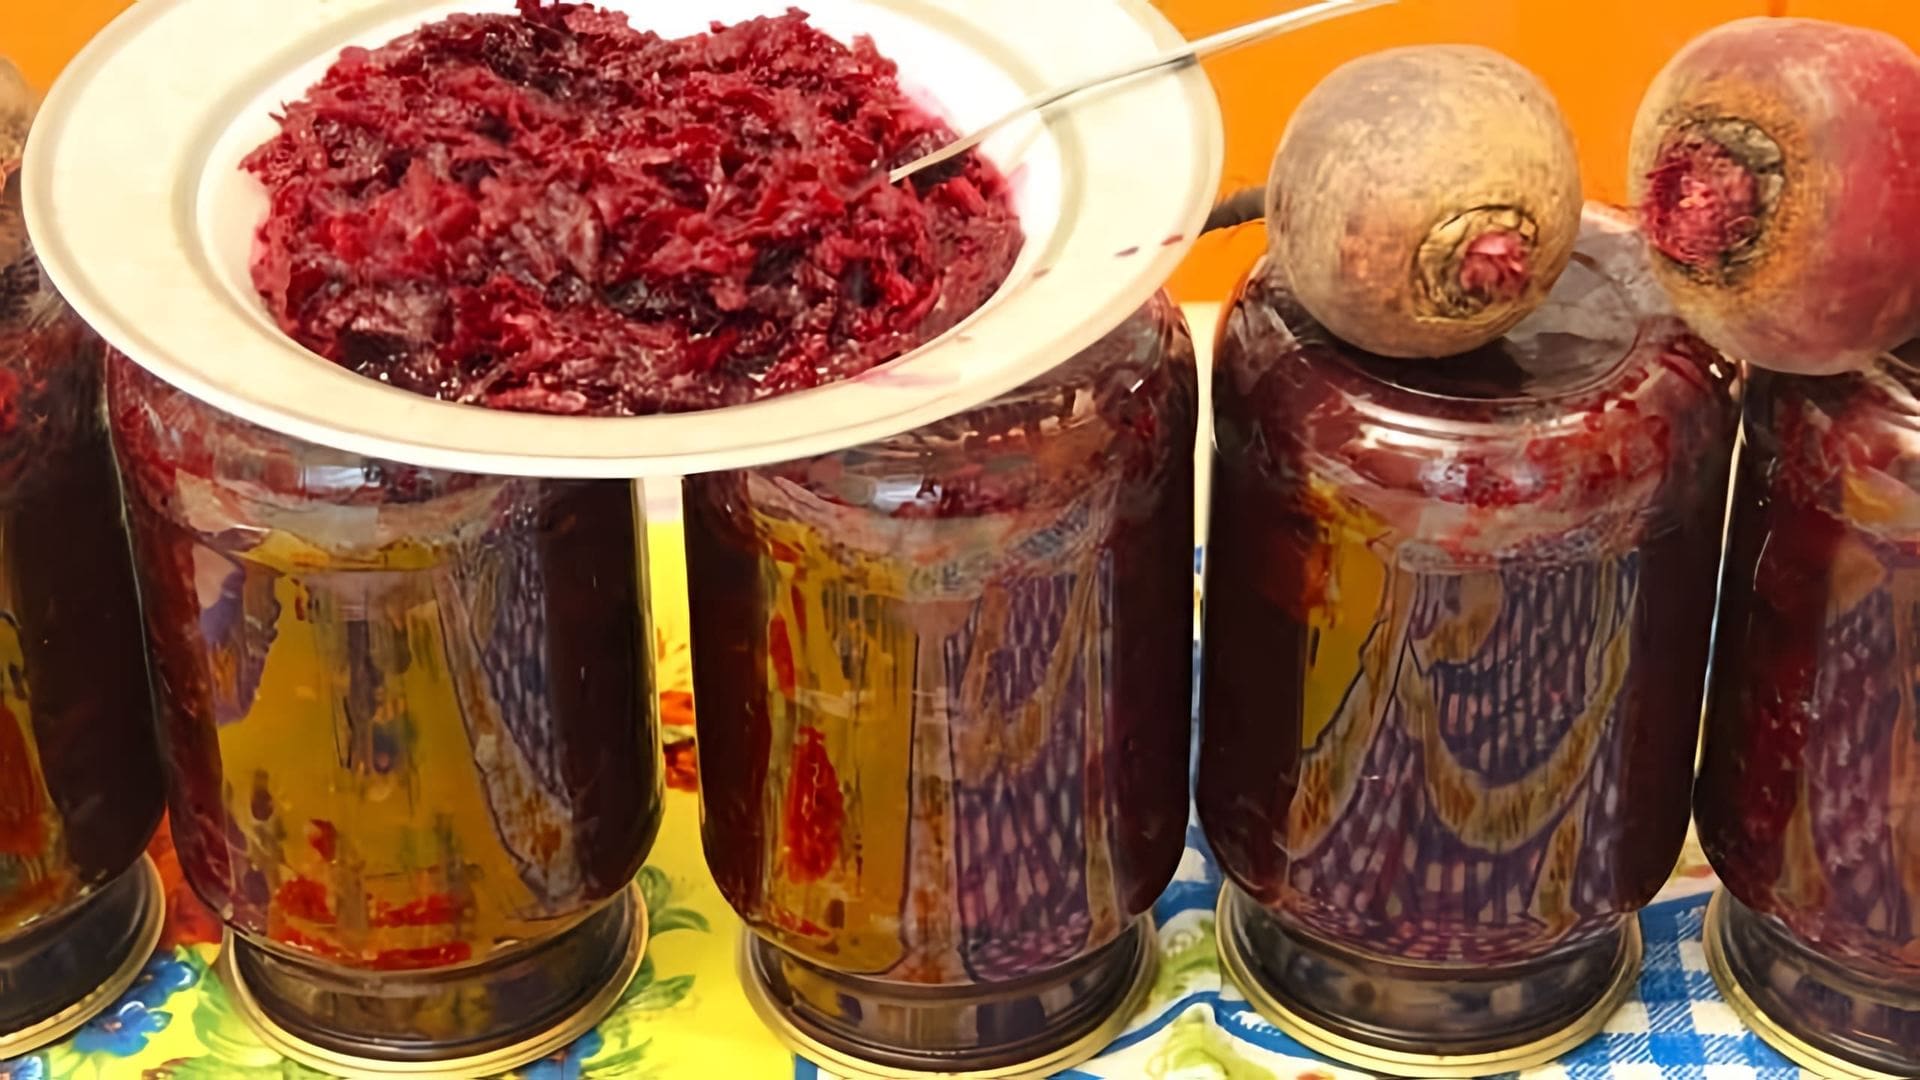 Видео как приготовить маринованную свекольную закуску под названием "Гости у порога" с использованием 5 килограммов тертой свеклы